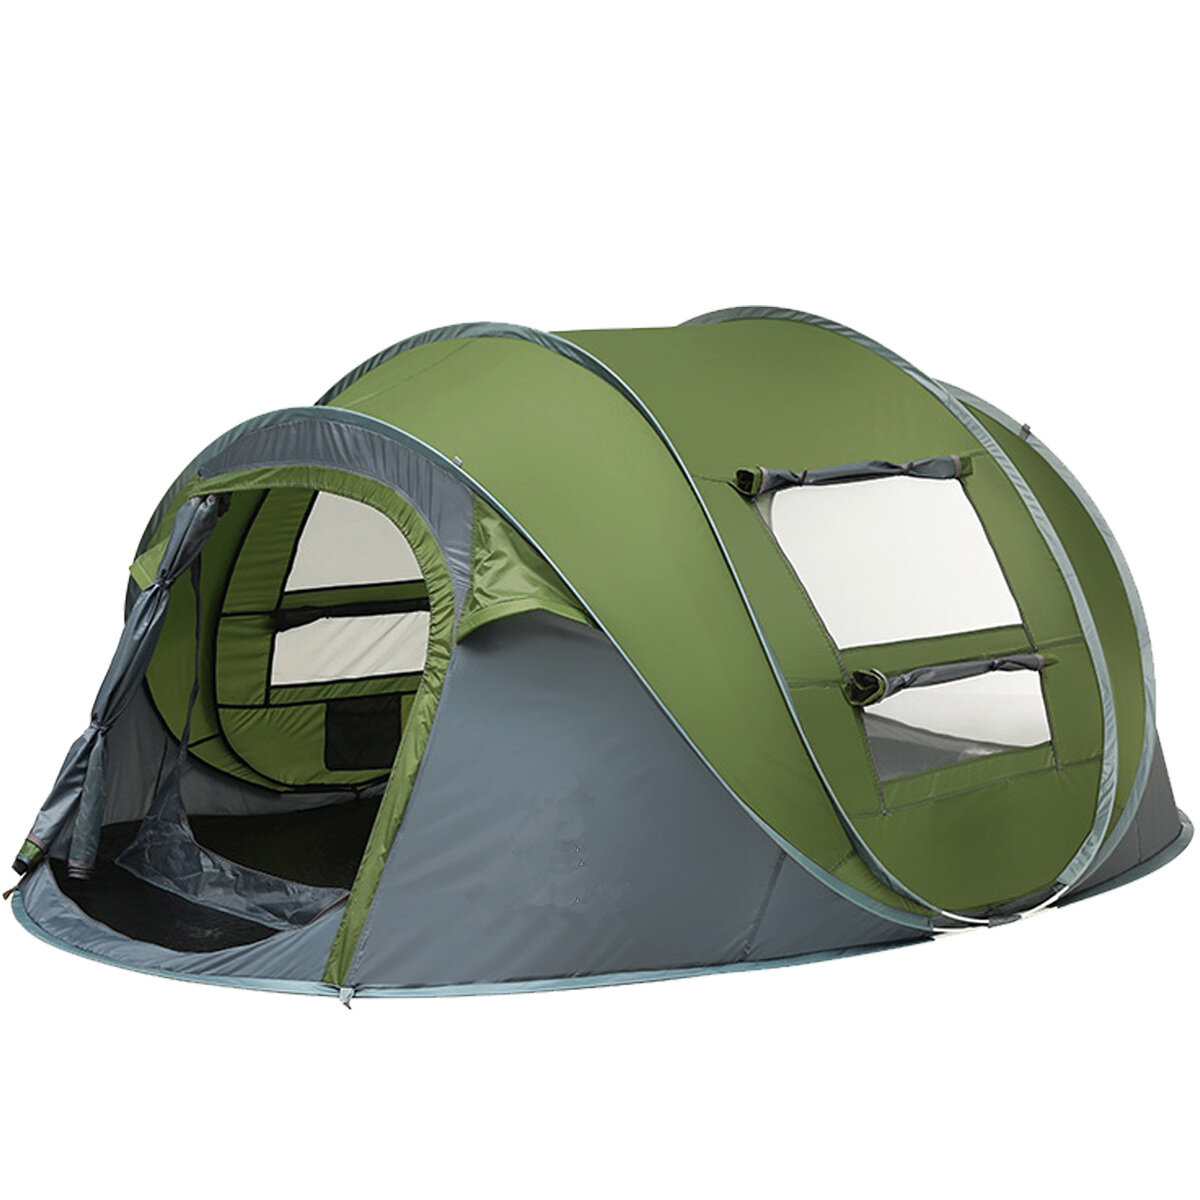 Tenda da campeggio per 3-4/5-8 persone con doppia porta, traspirante, automatica, impermeabile, con tenda parasole per attività all'aperto come escursioni o spiaggia.